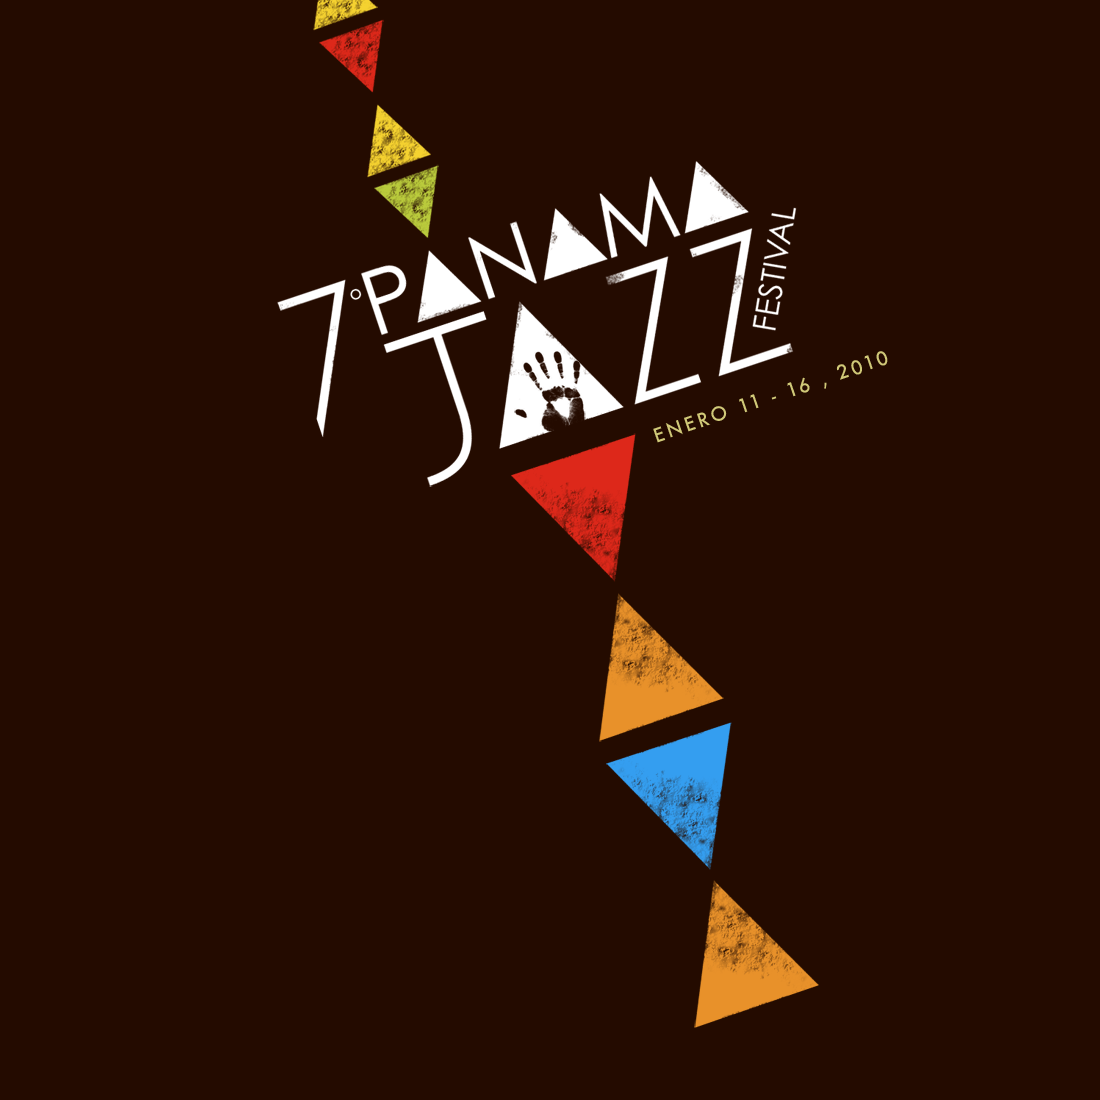 Panama Jazz Festival: January 11 to 16